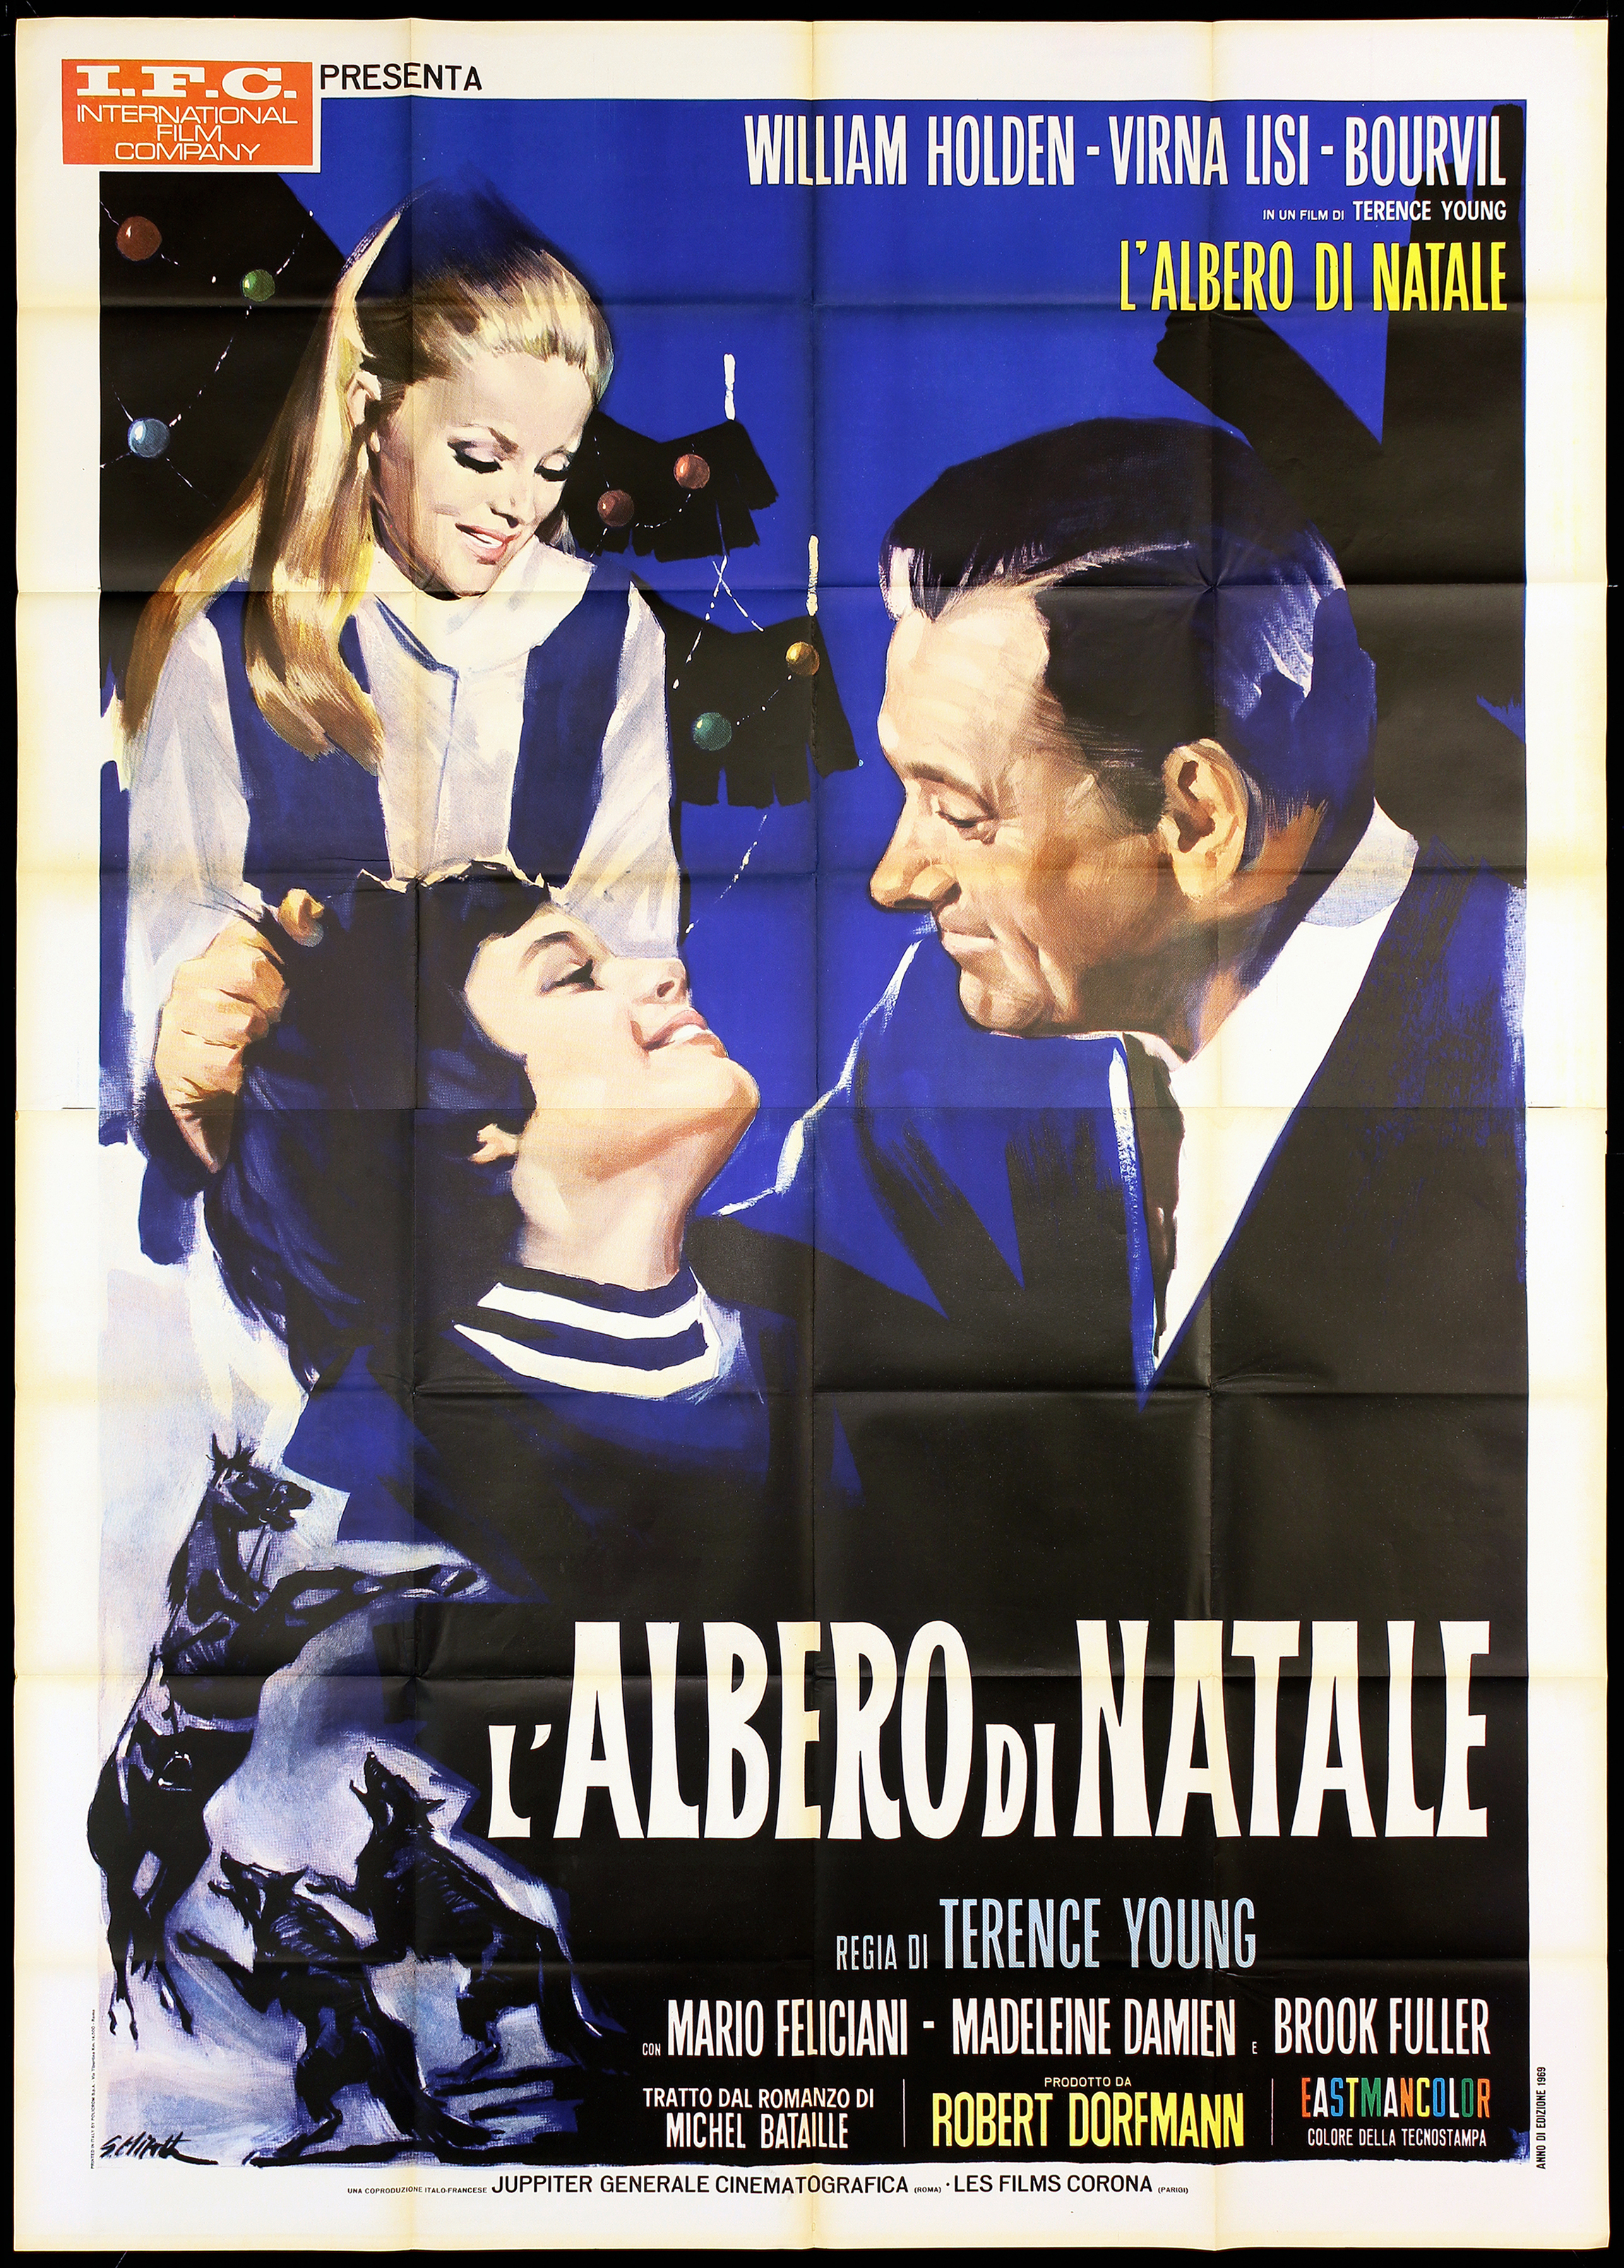 L Albero Di Natale Film.L Albero Di Natale Manifesto Cinema Terence Young William Holden Movie Poster 4f Ebay